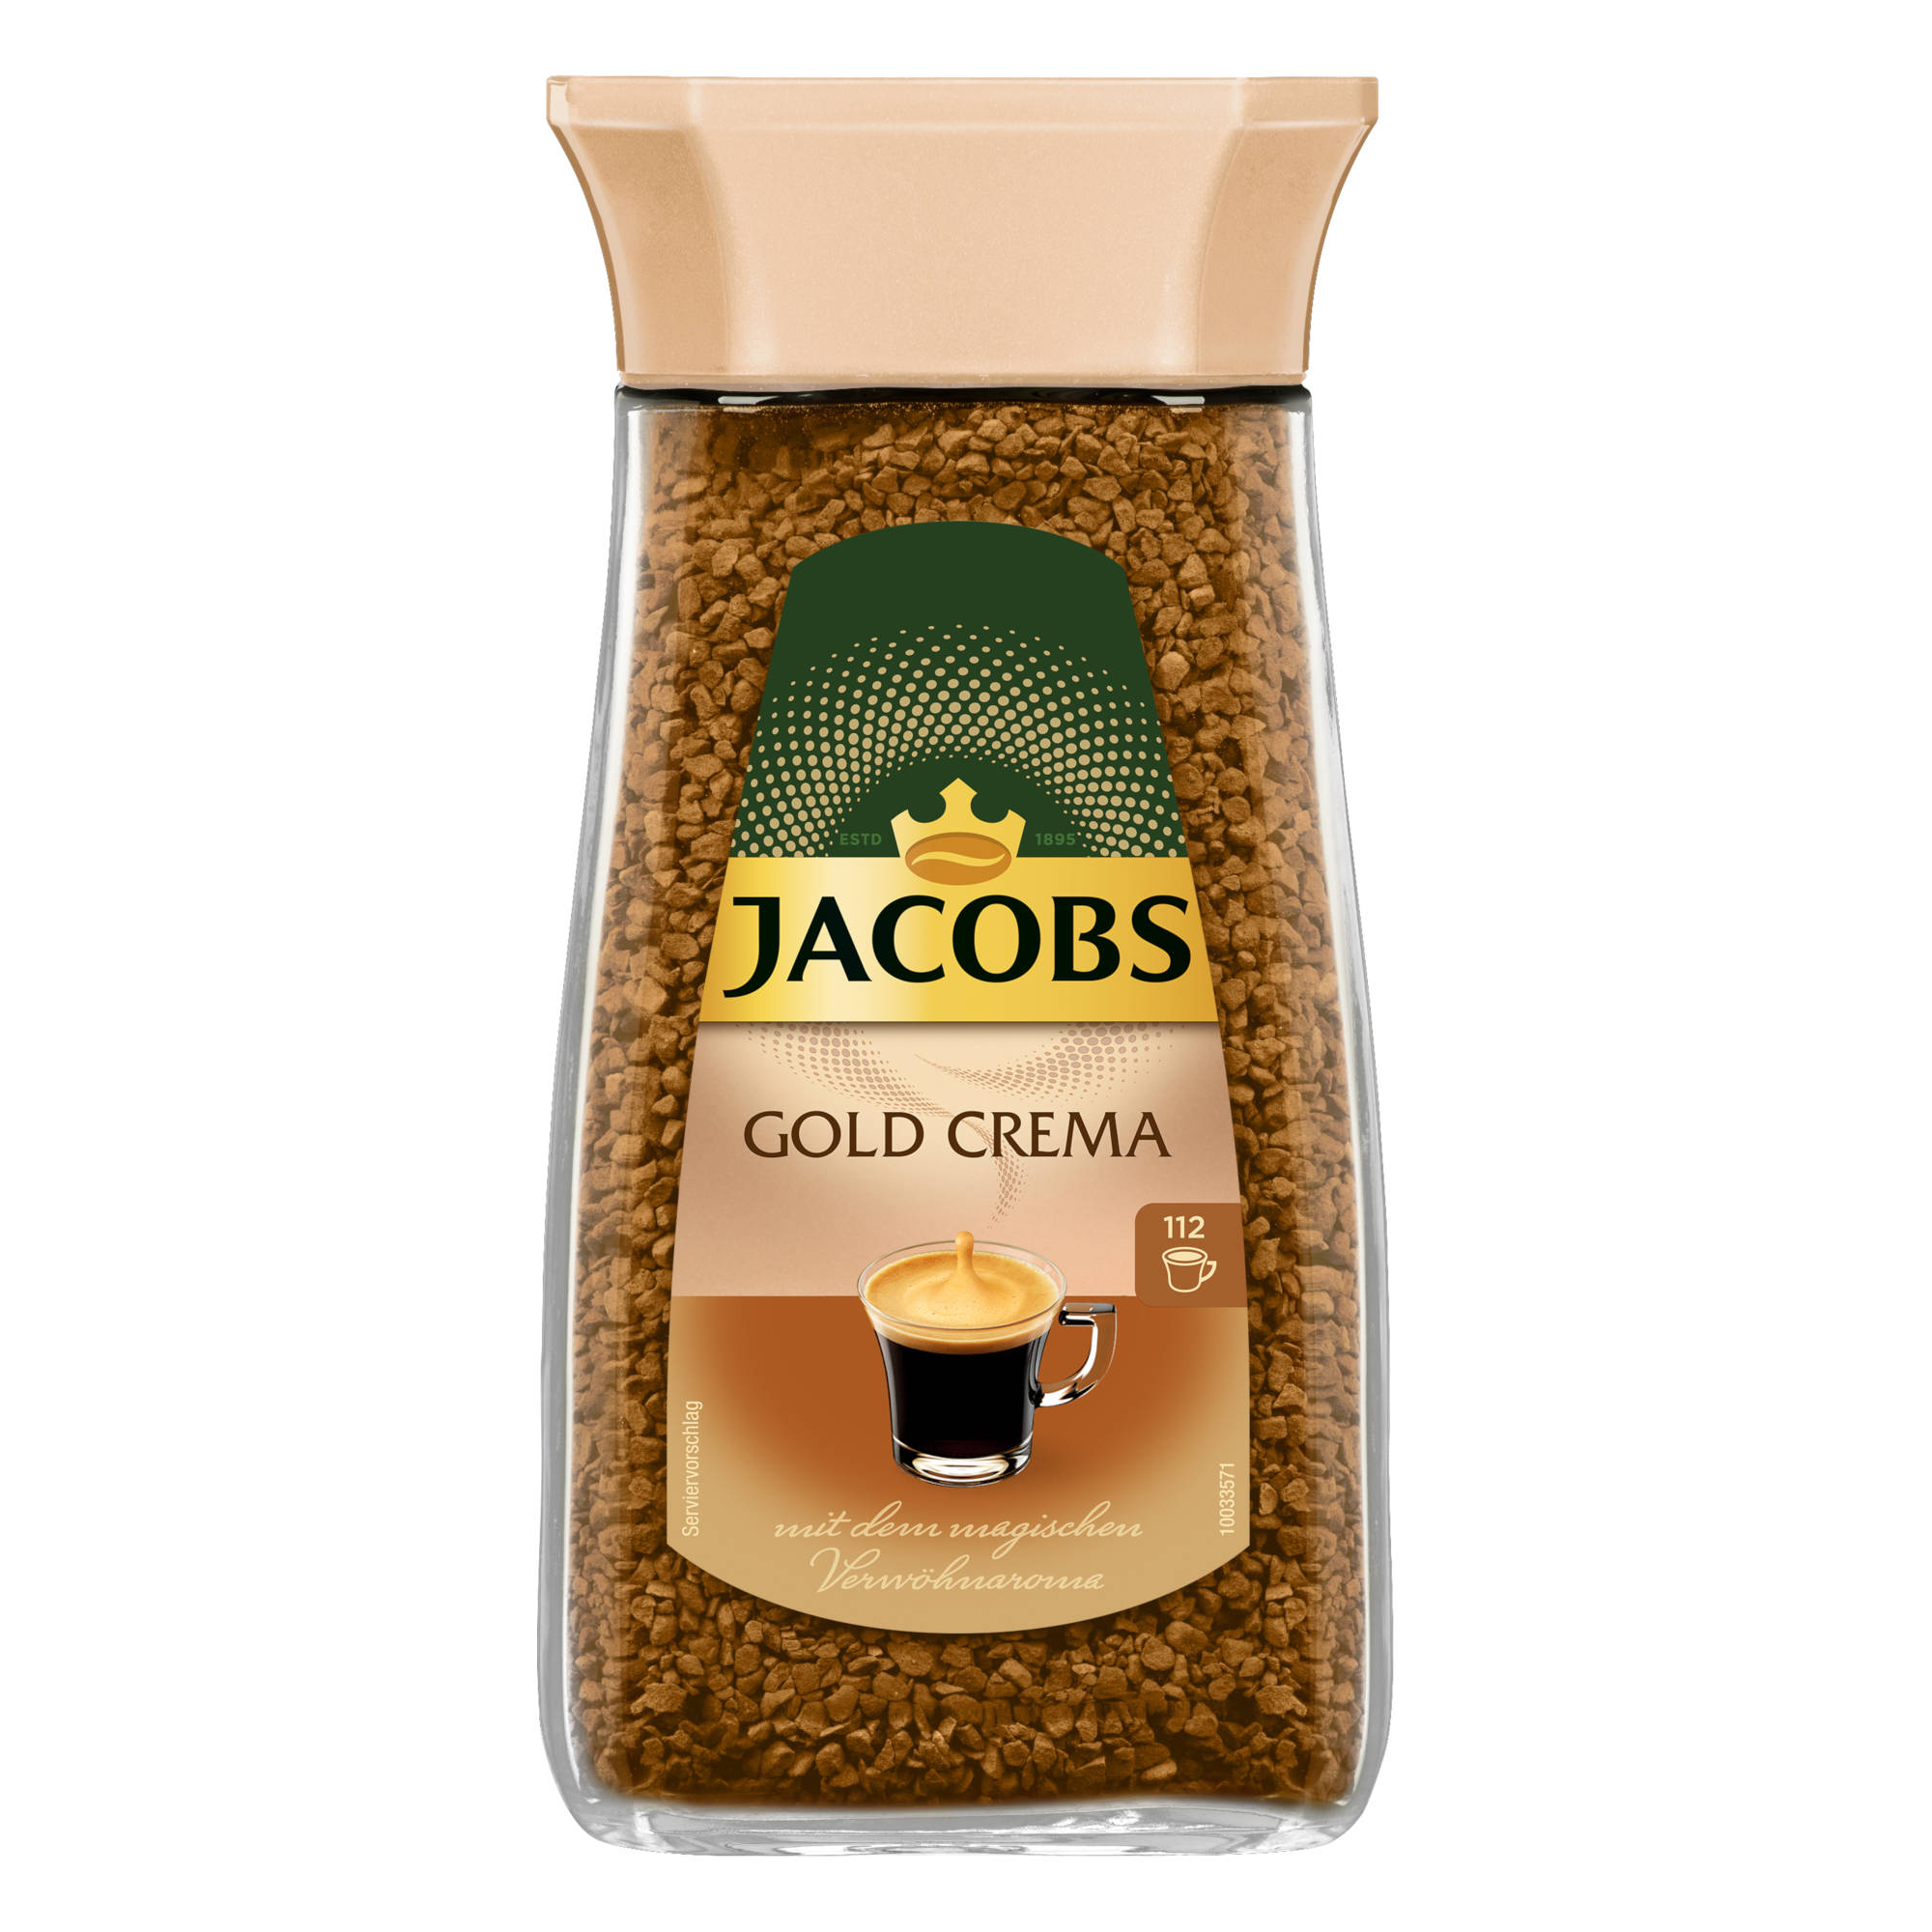 JACOBS Gold Crema 6 x Wasser (In Kaffee g Gläser auflösen) heißem löslicher 200